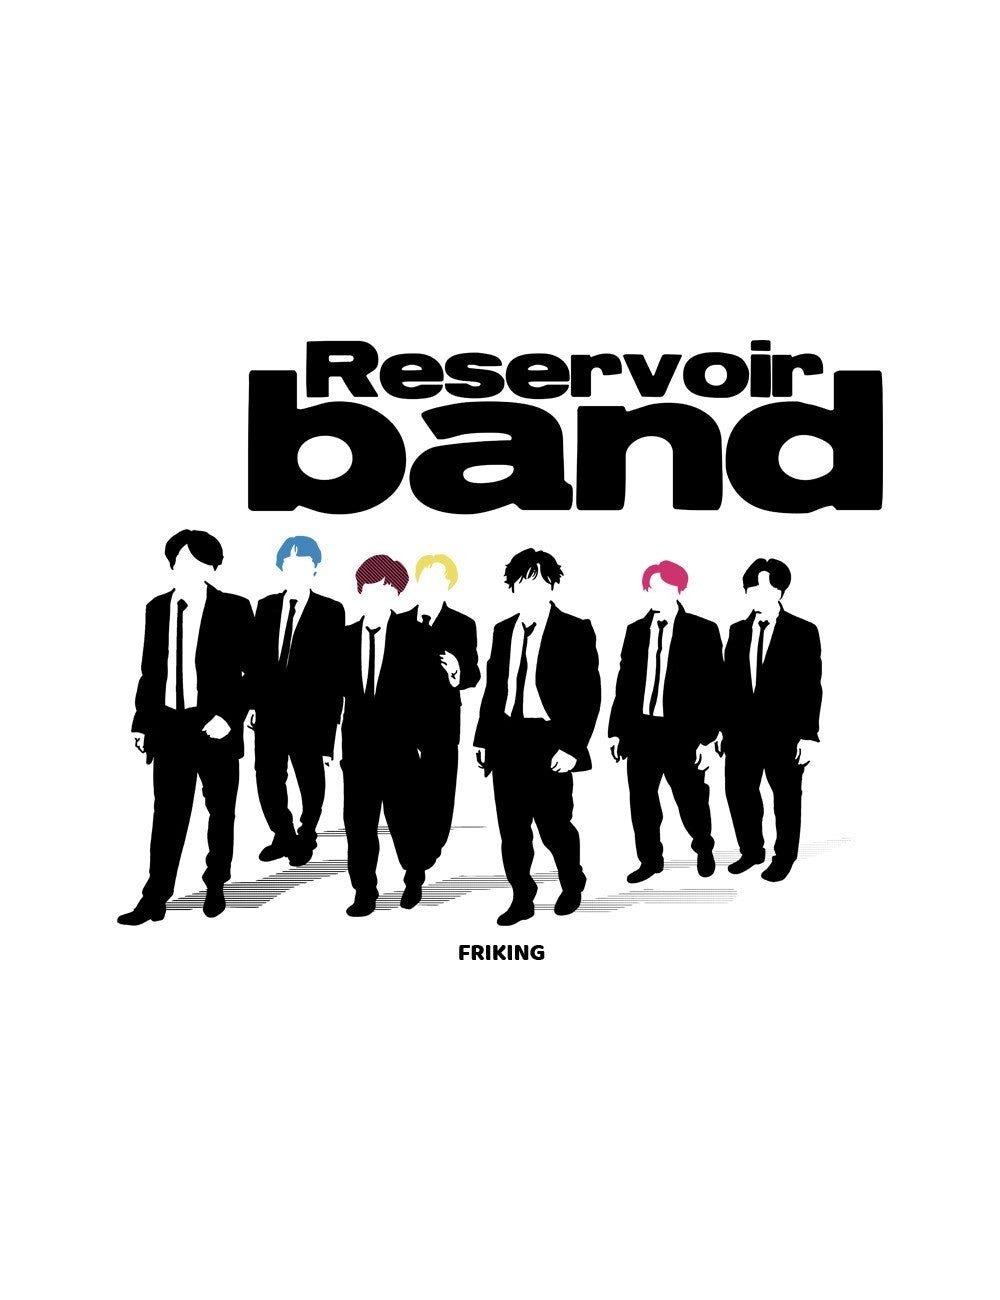  Reservoir band 